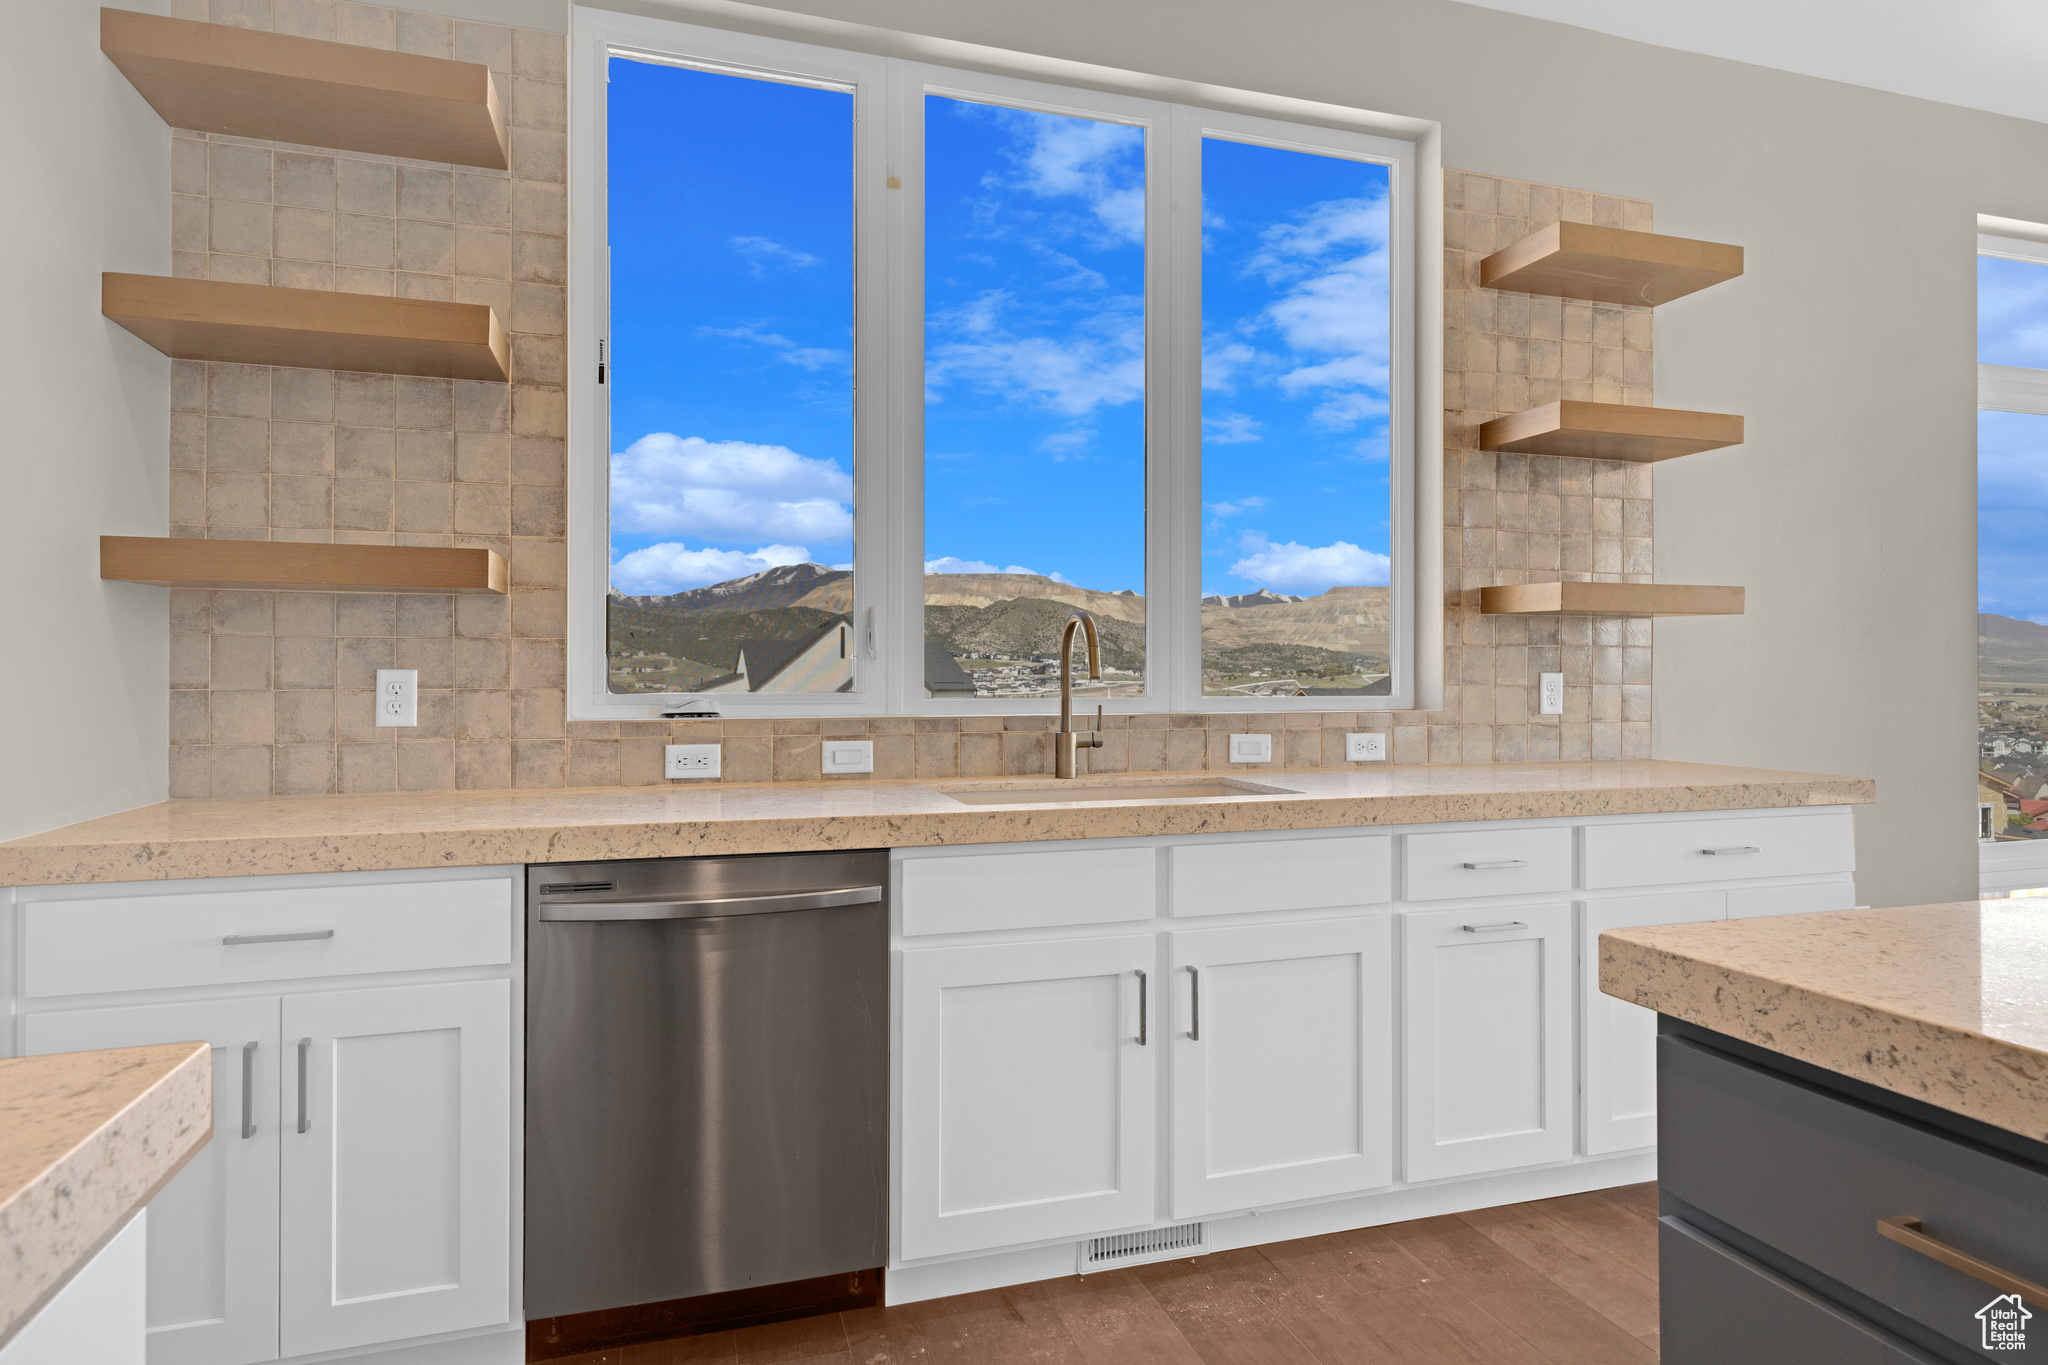 Kitchen with dishwasher, dark hardwood / wood-style floors, tasteful backsplash, white cabinets, and sink